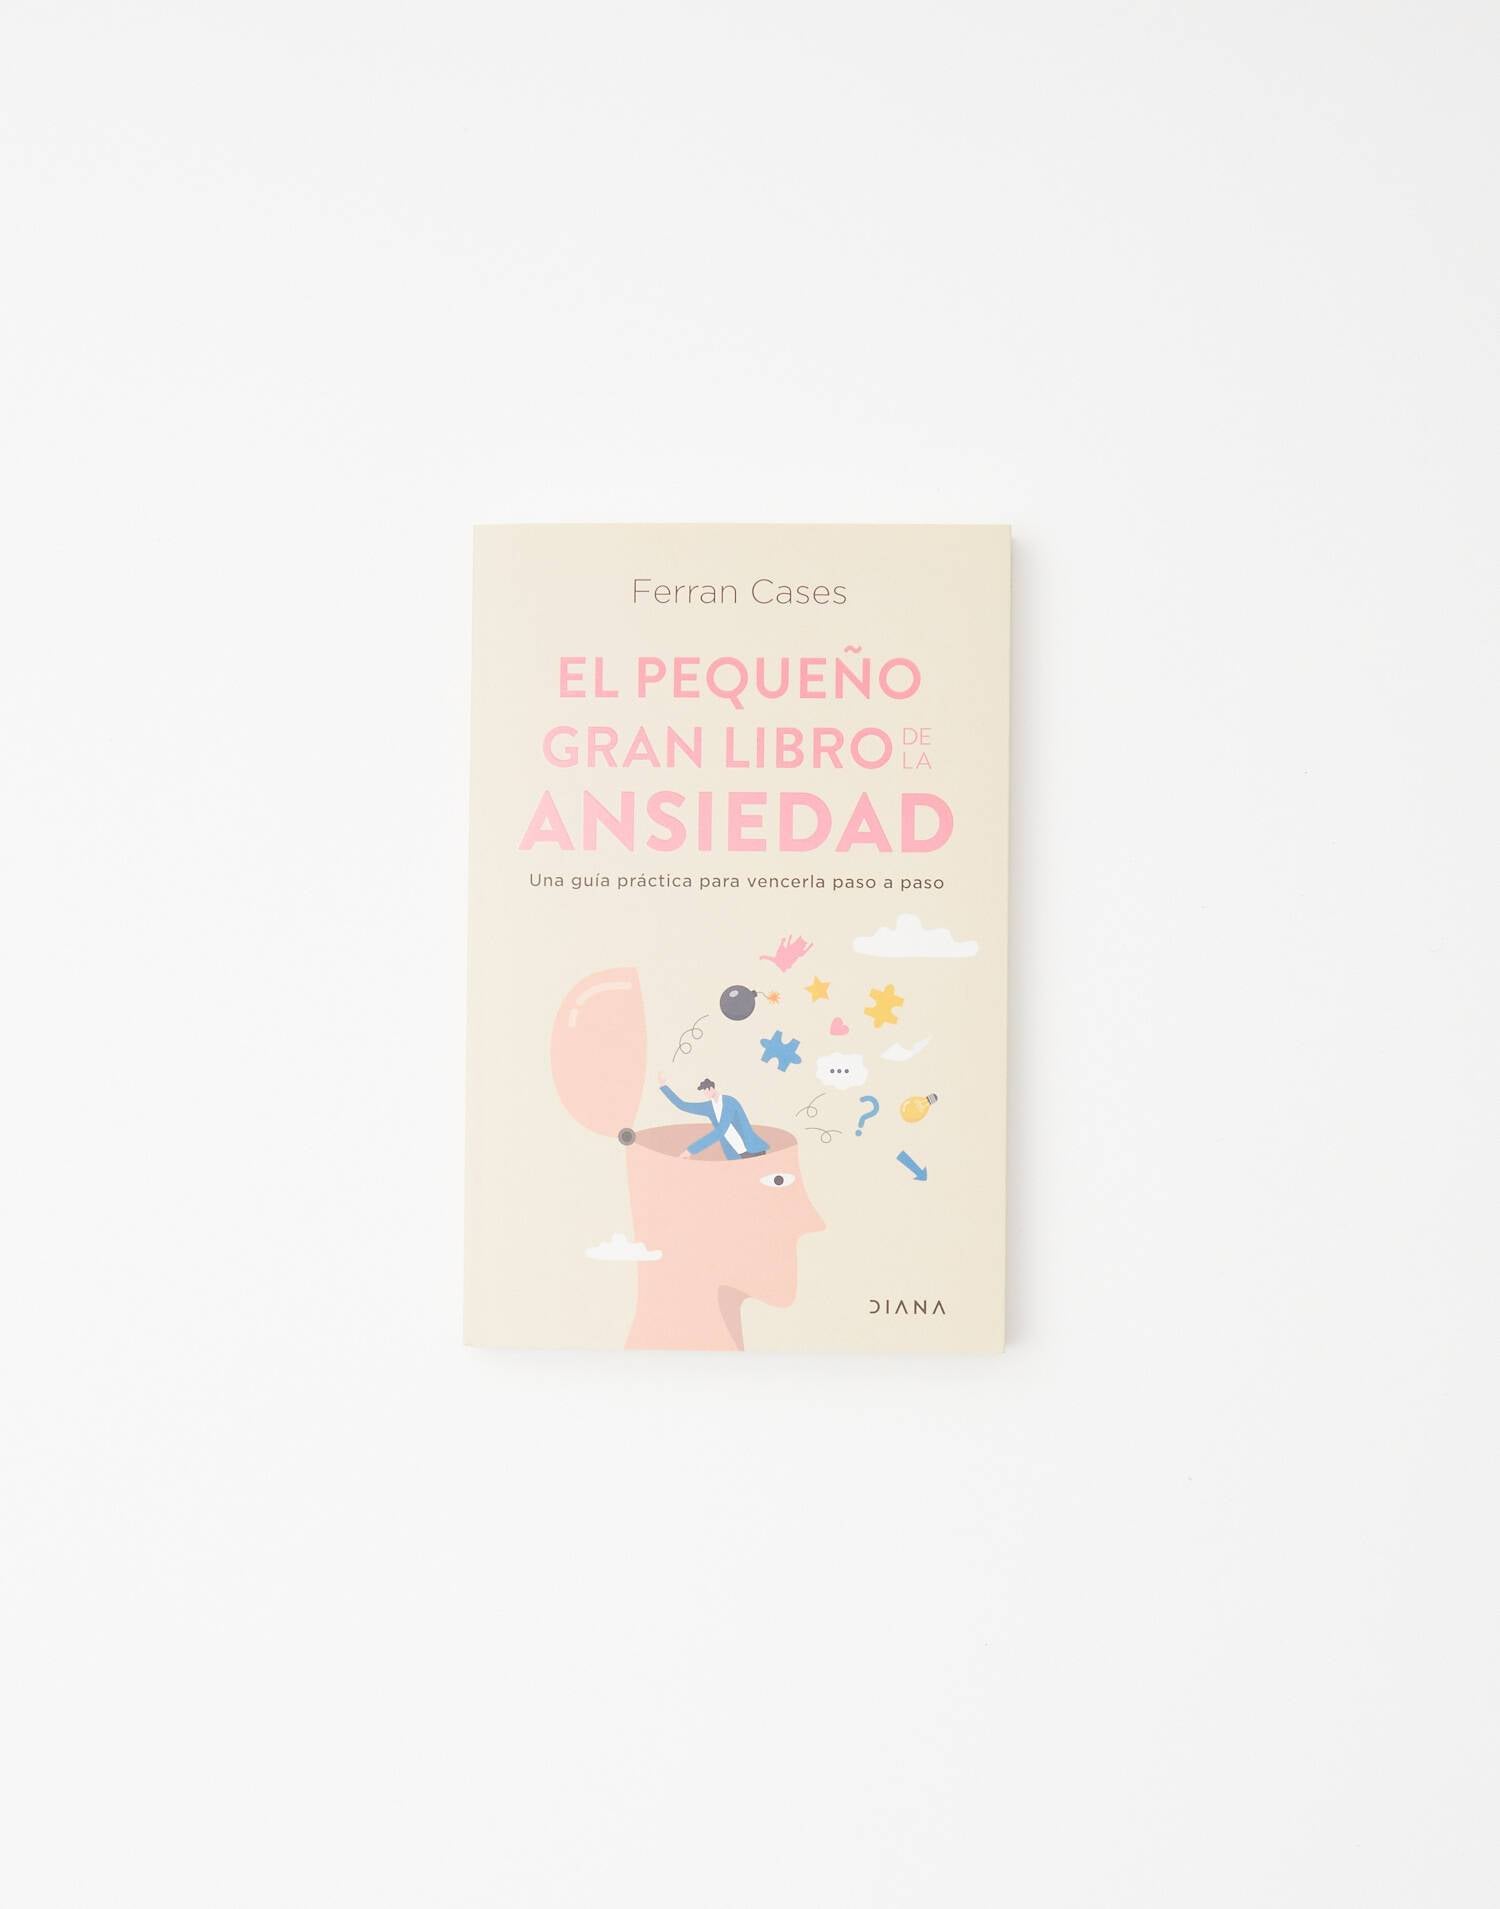 El pequeño libro de la ansiedad: Una guía práctica para vencerla paso a  paso by Ferran Cases